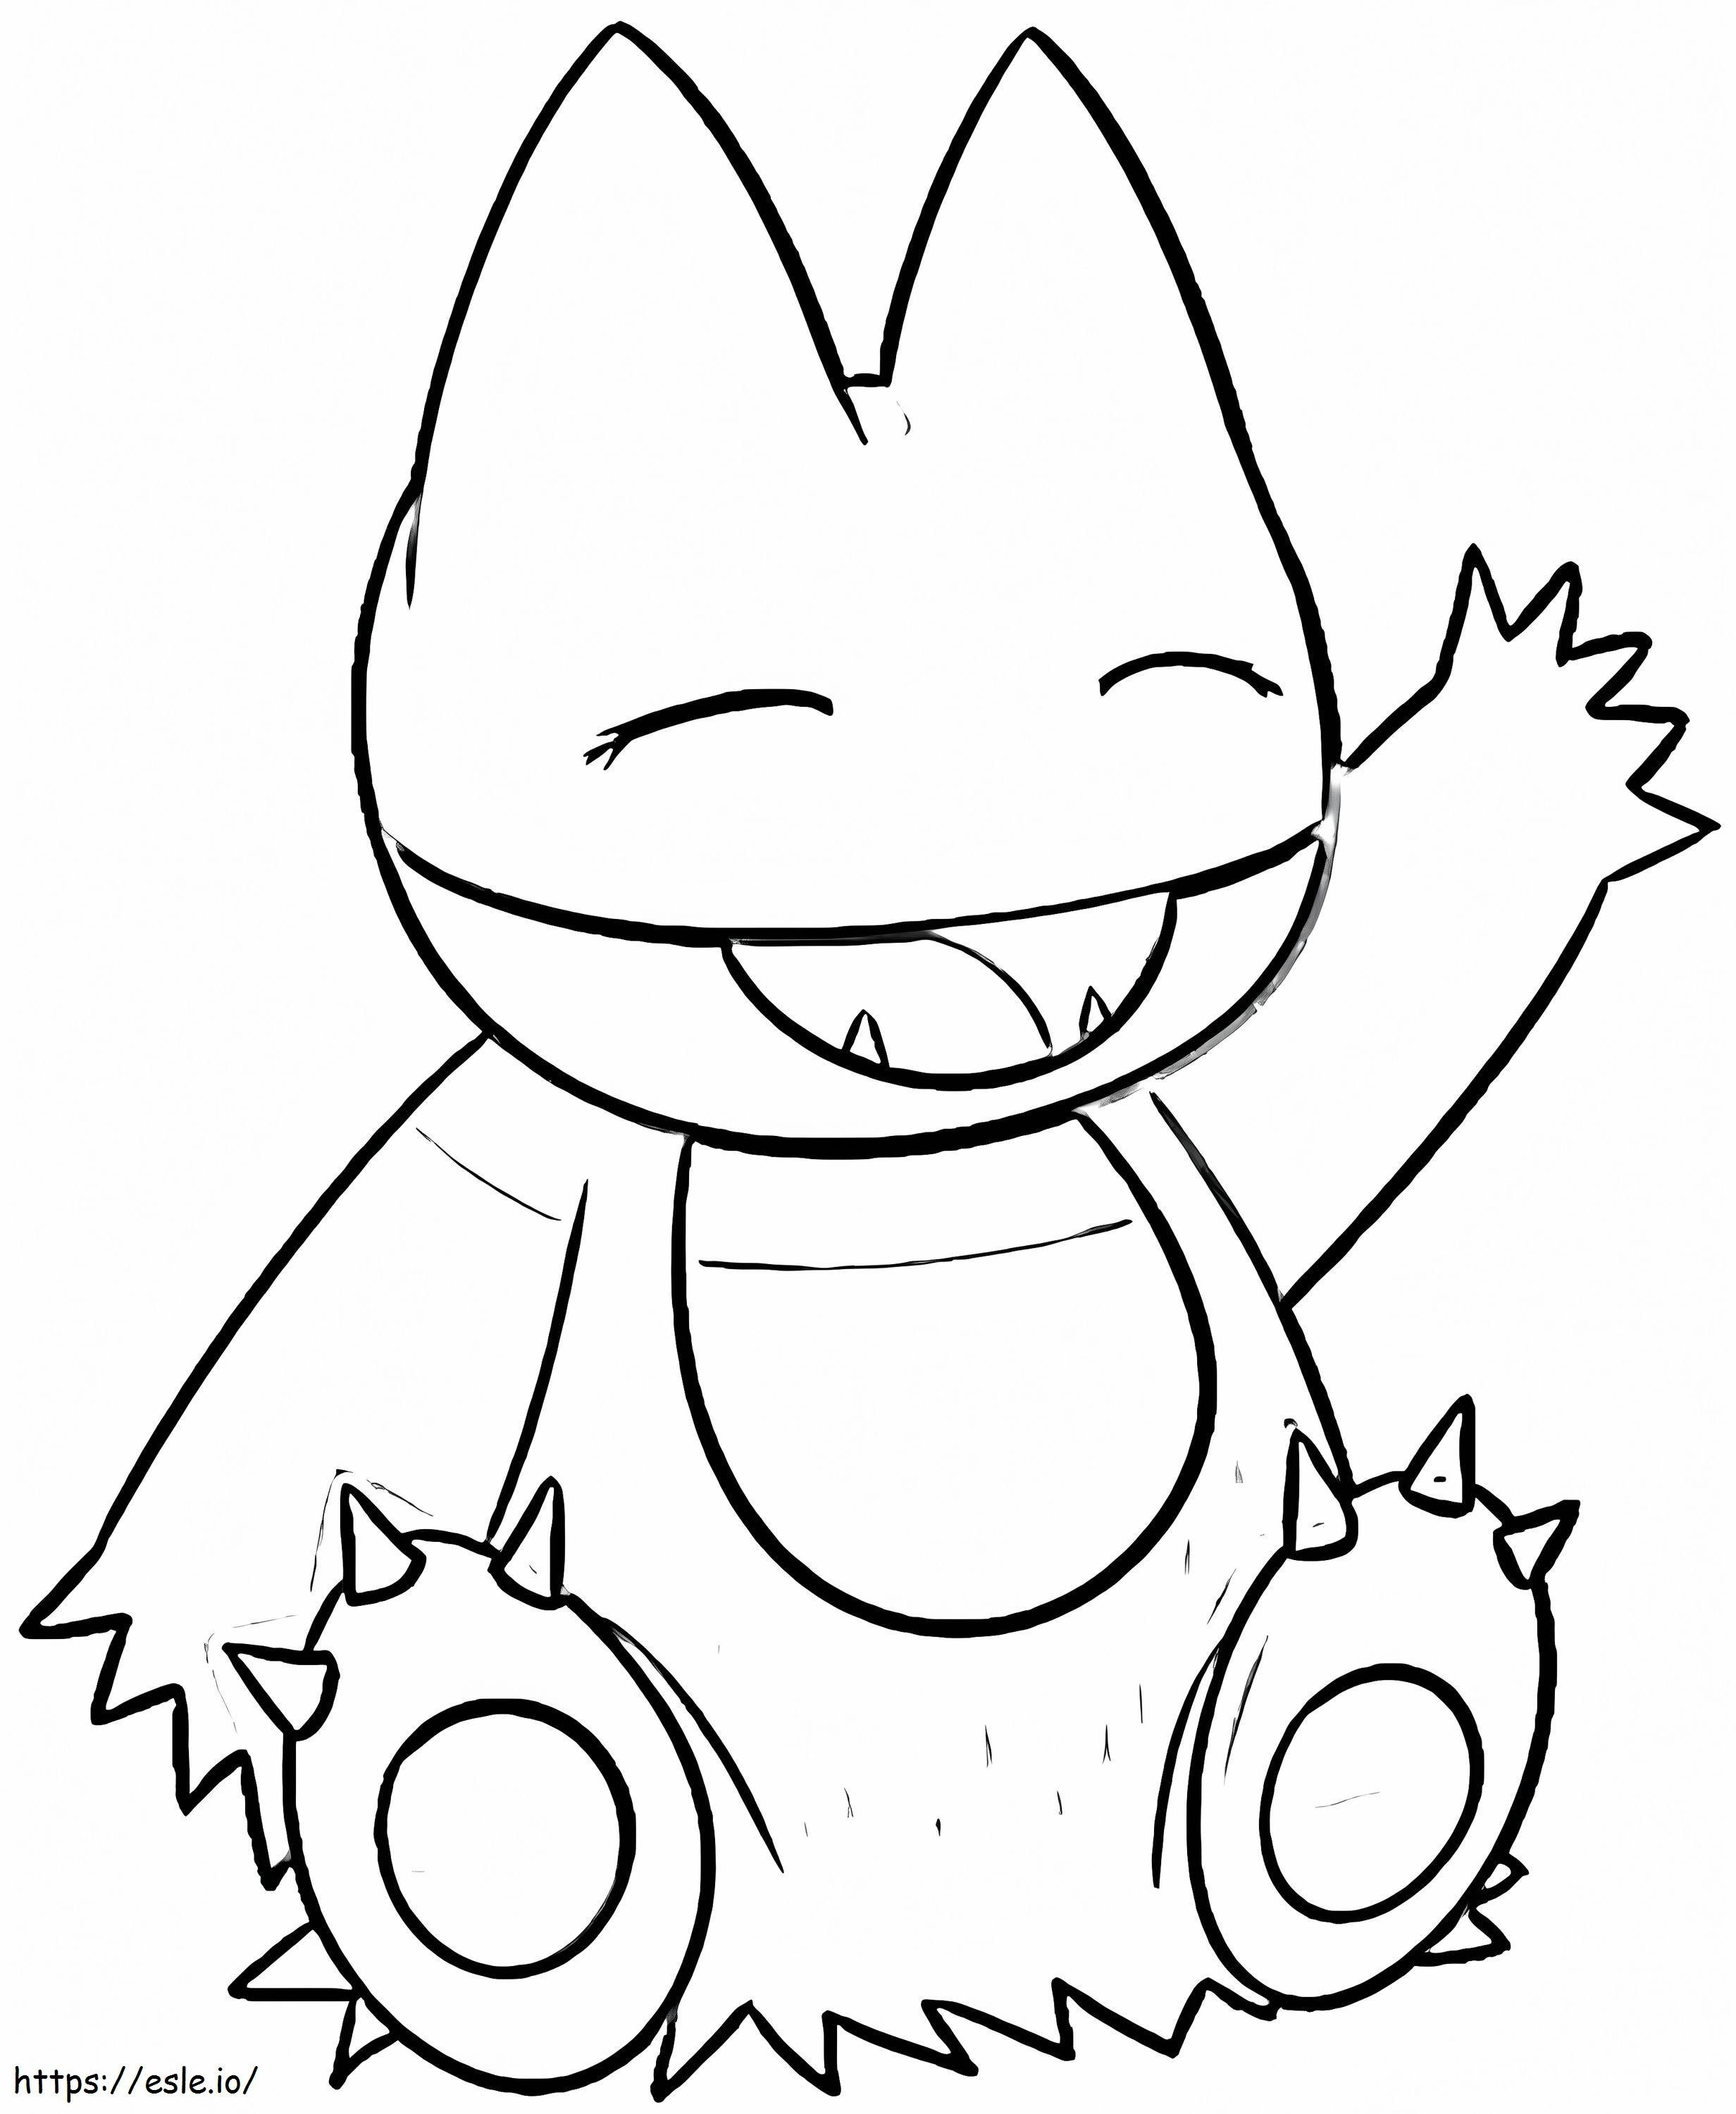 Szczęśliwy Pokemon Munchlax kolorowanka